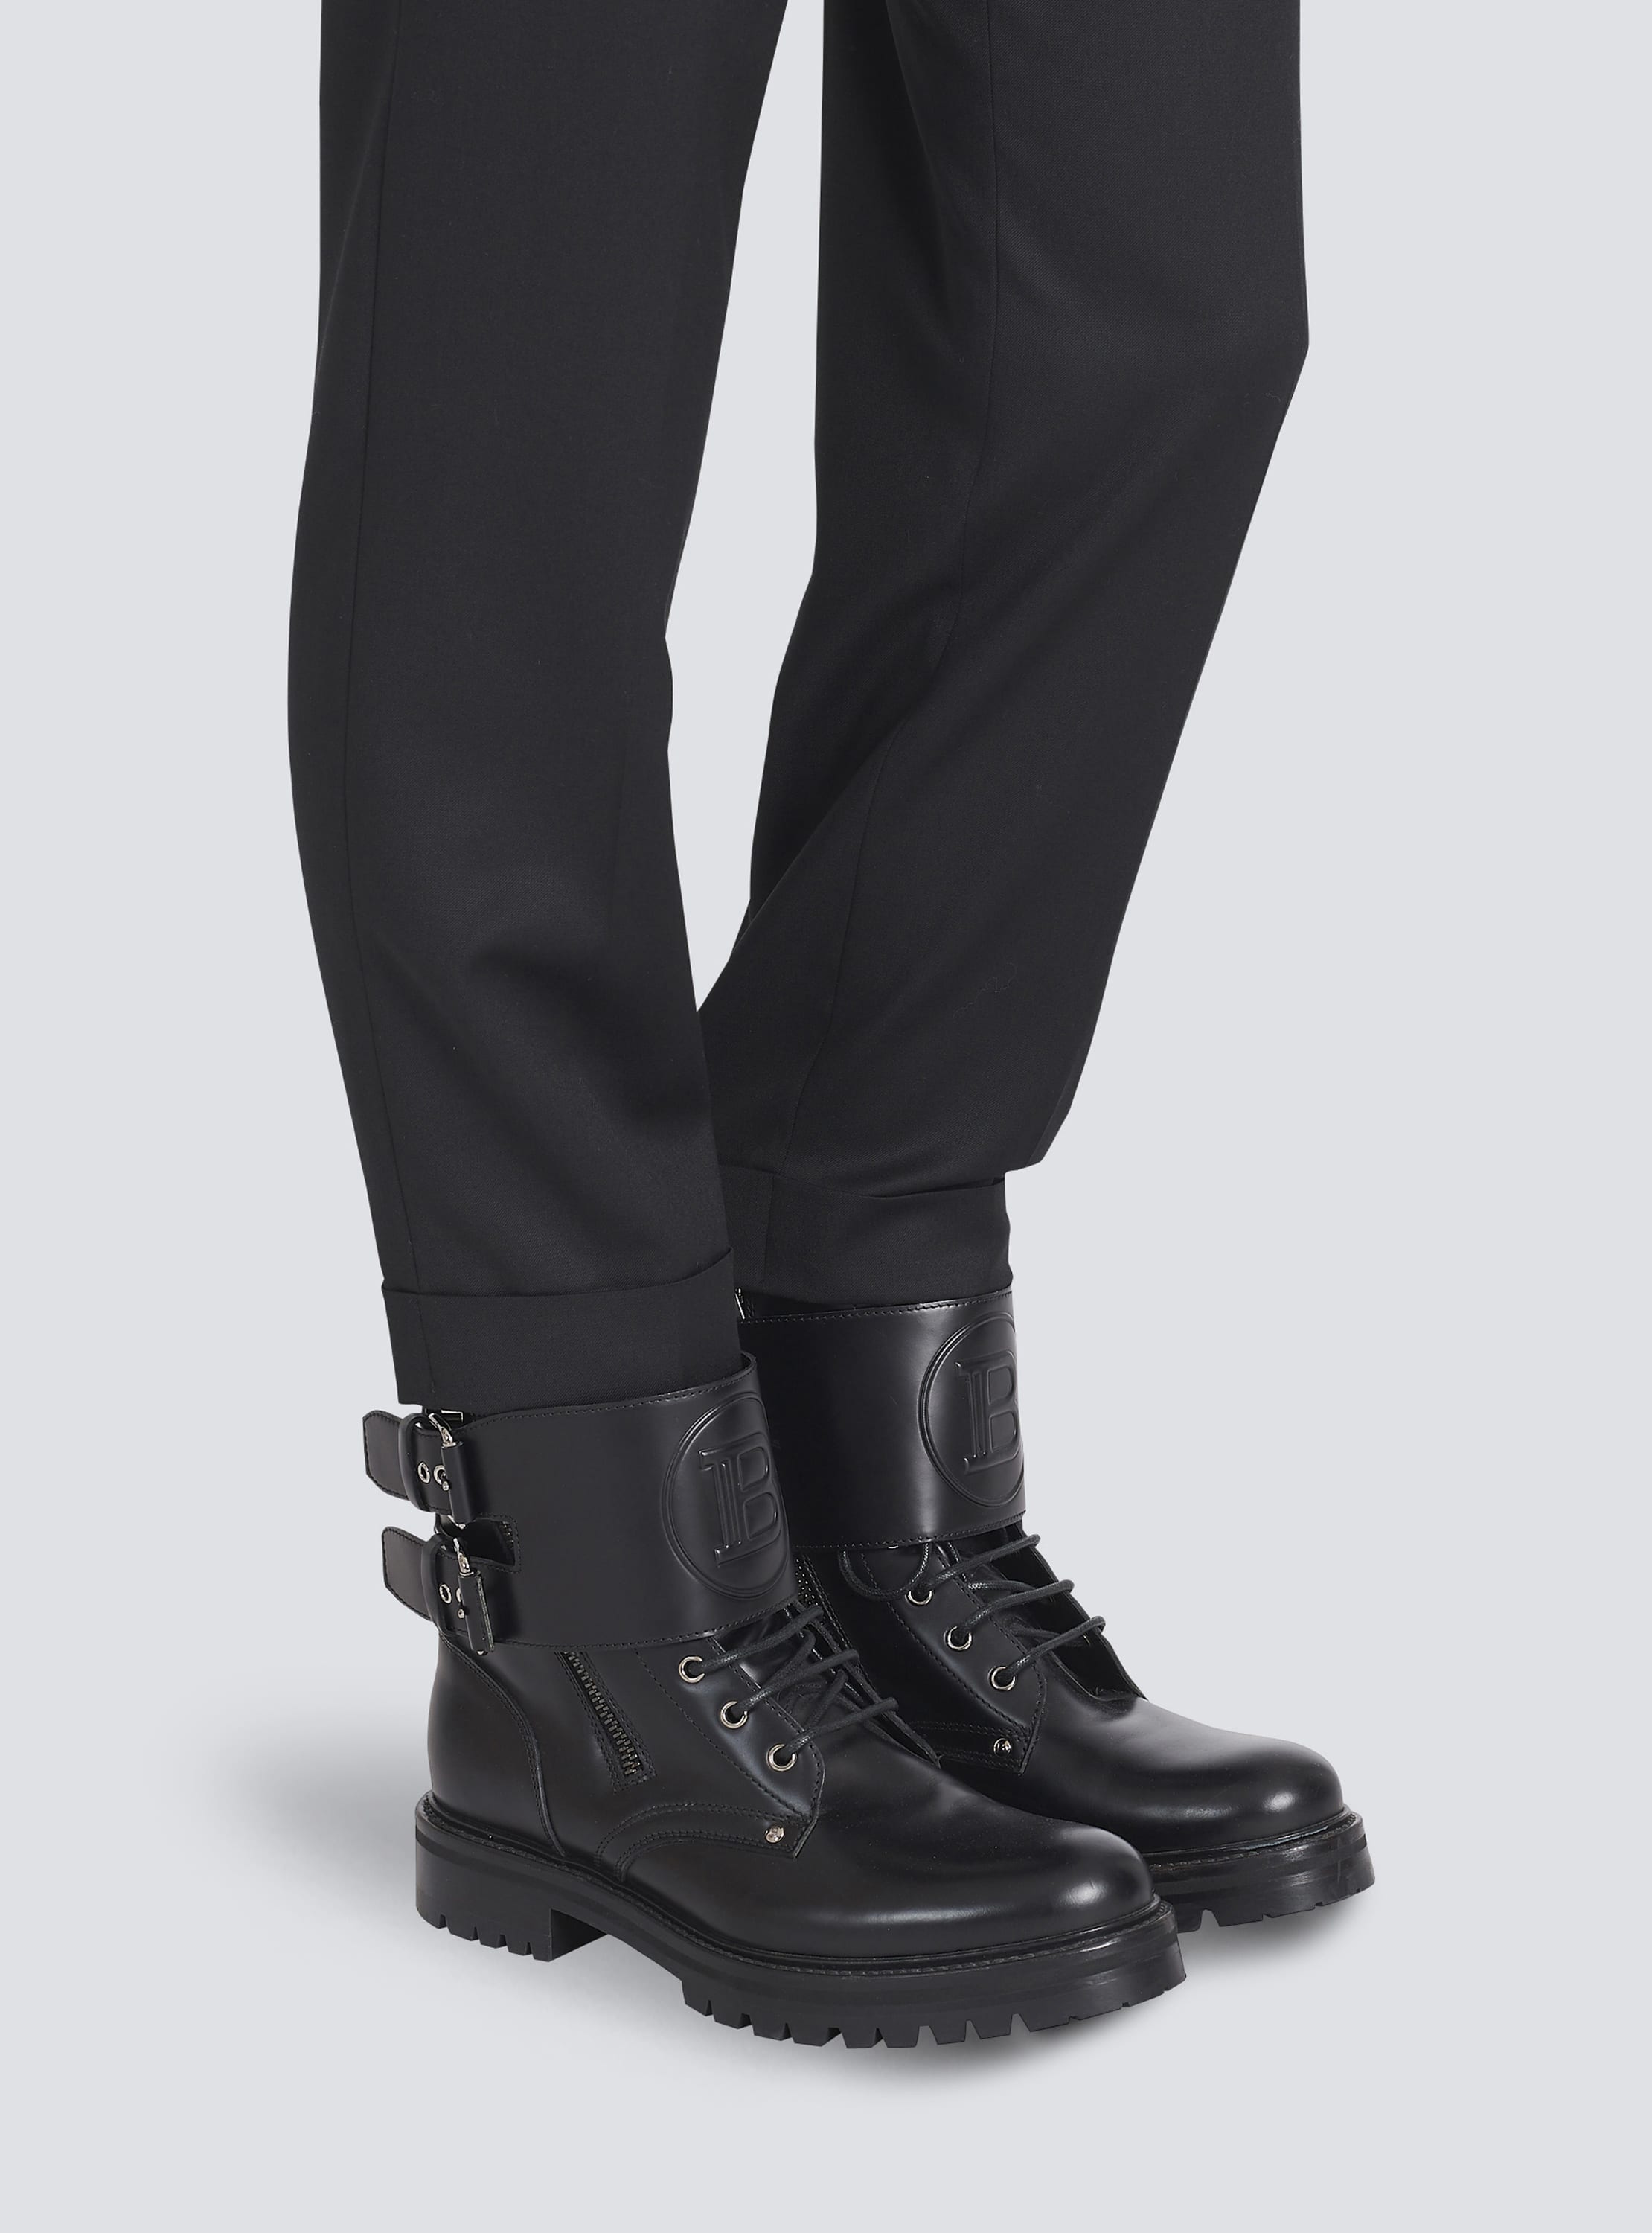 Louis Vuitton Men's Ranger Ankle Boots Damier Graphite Textile and Leather  - ShopStyle